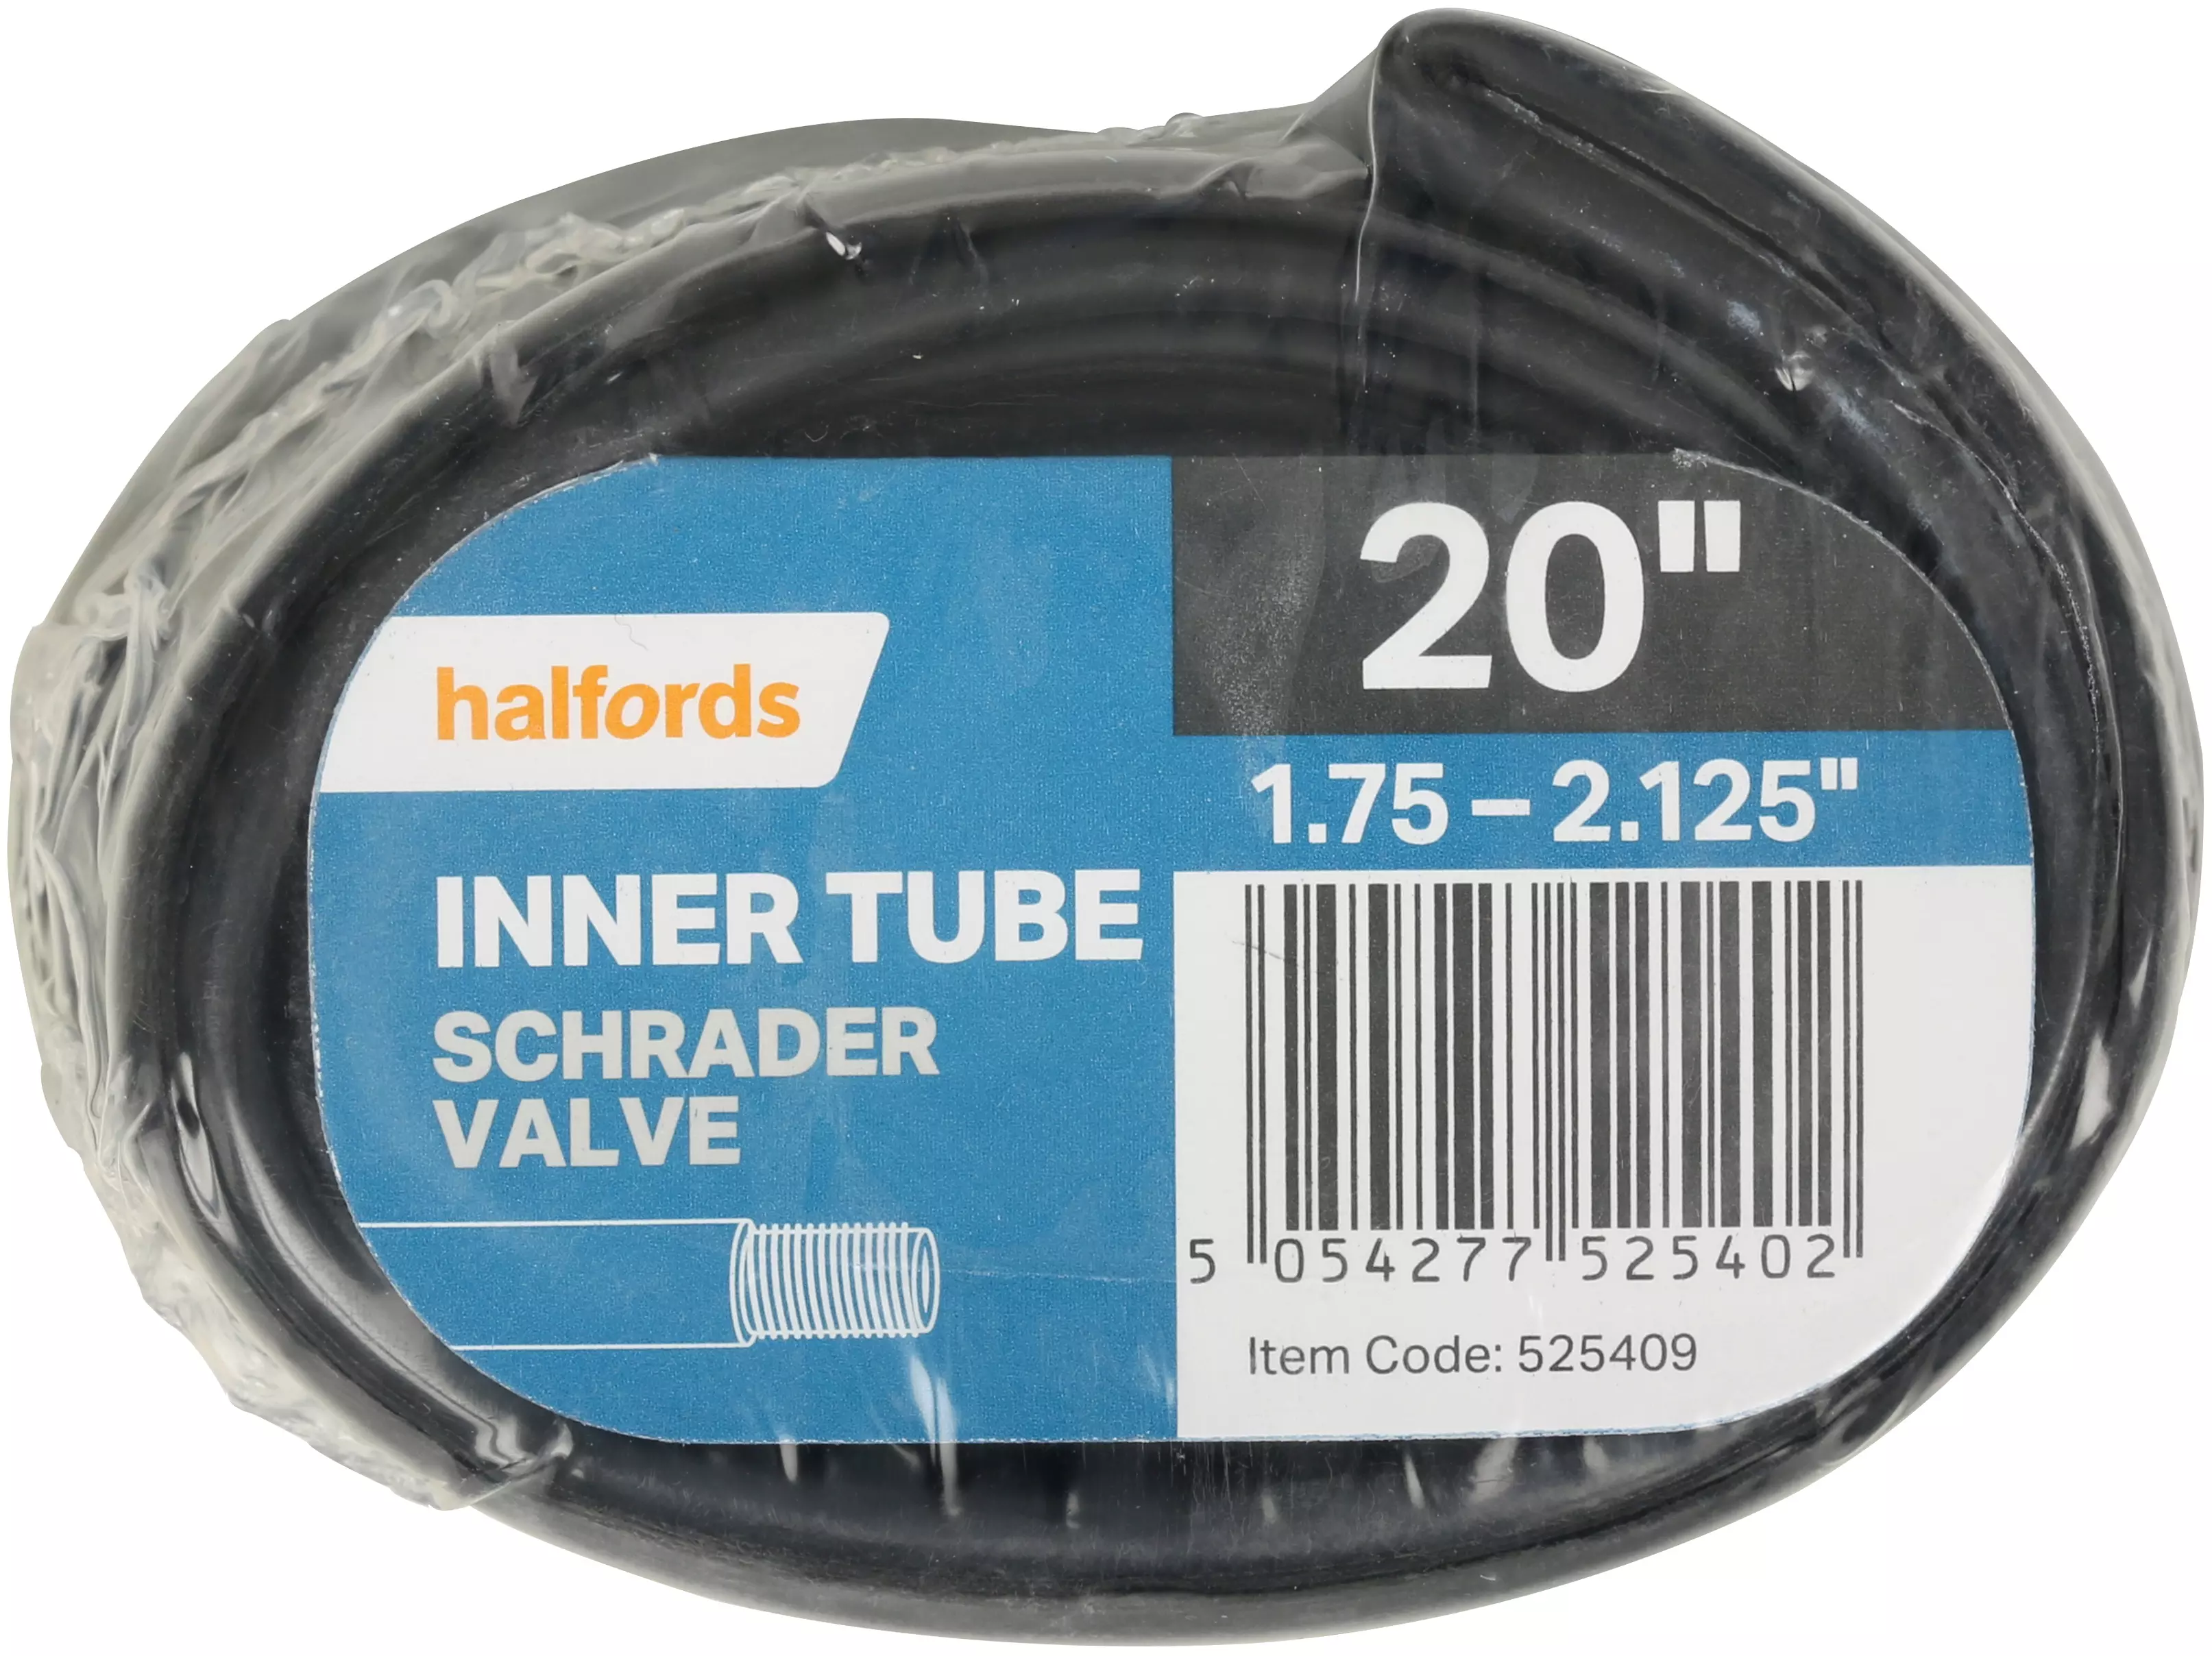 pram inner tube halfords